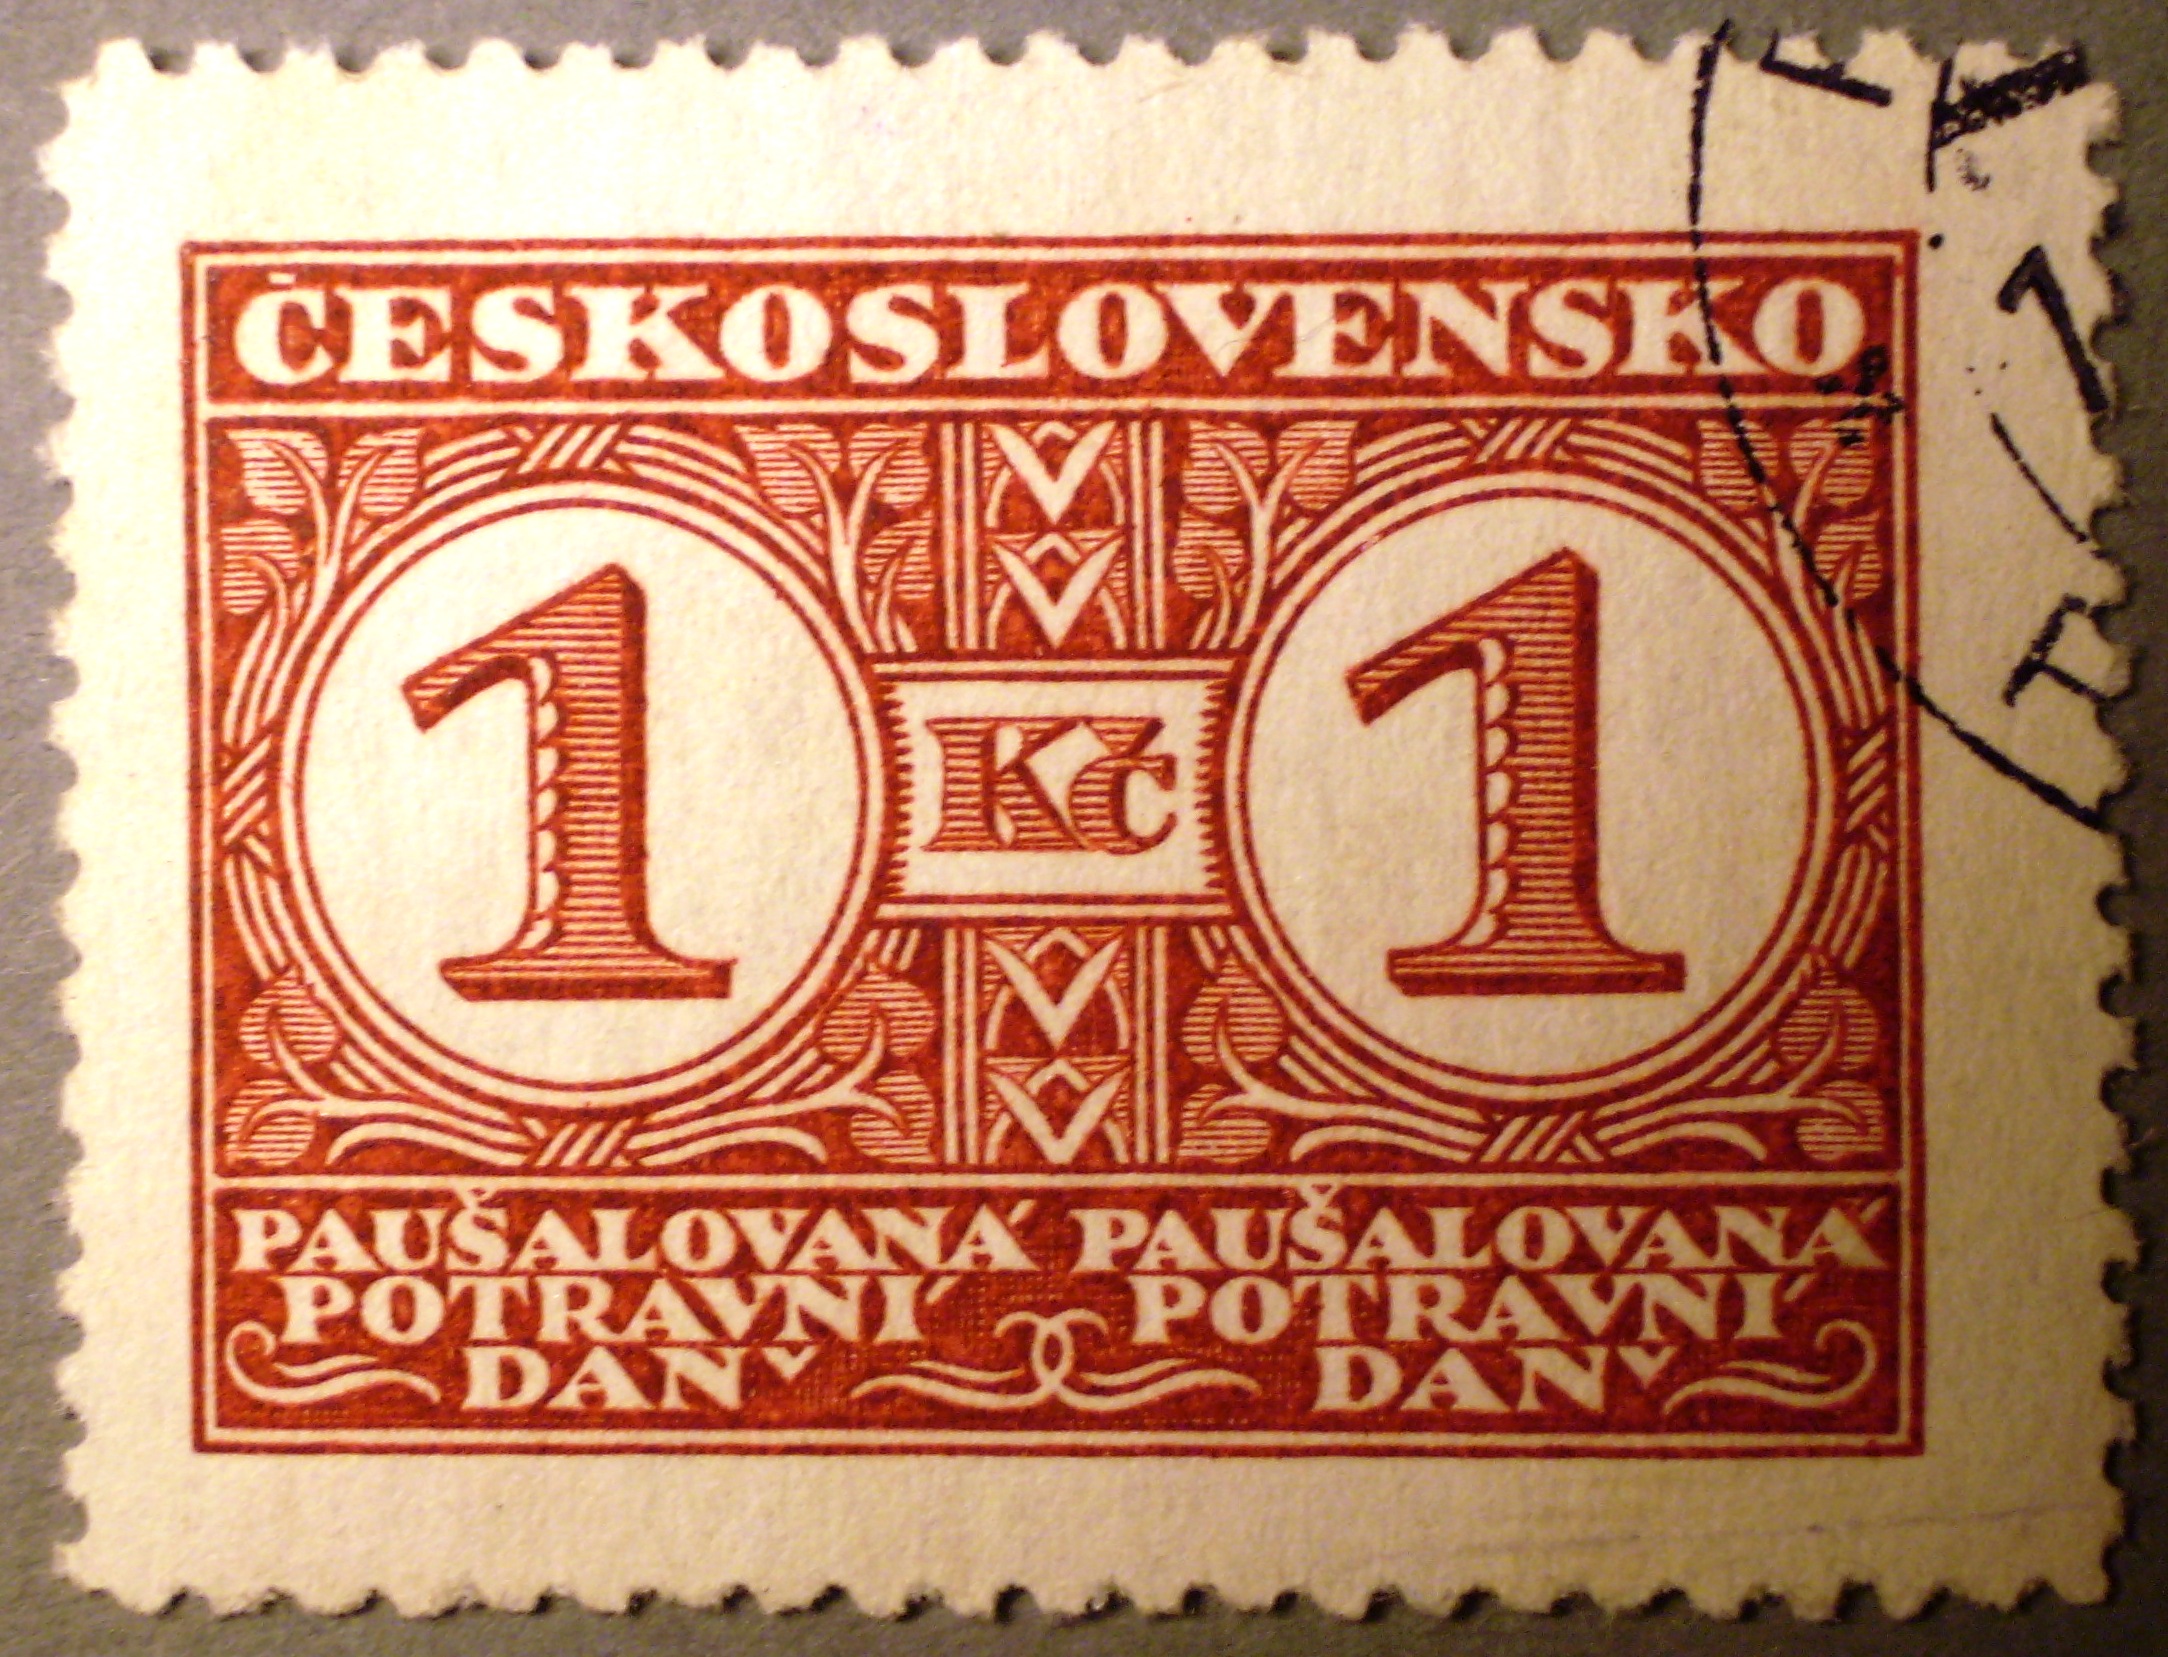 Známky používané k proclení zboží PDNČ poštovními úřady 1